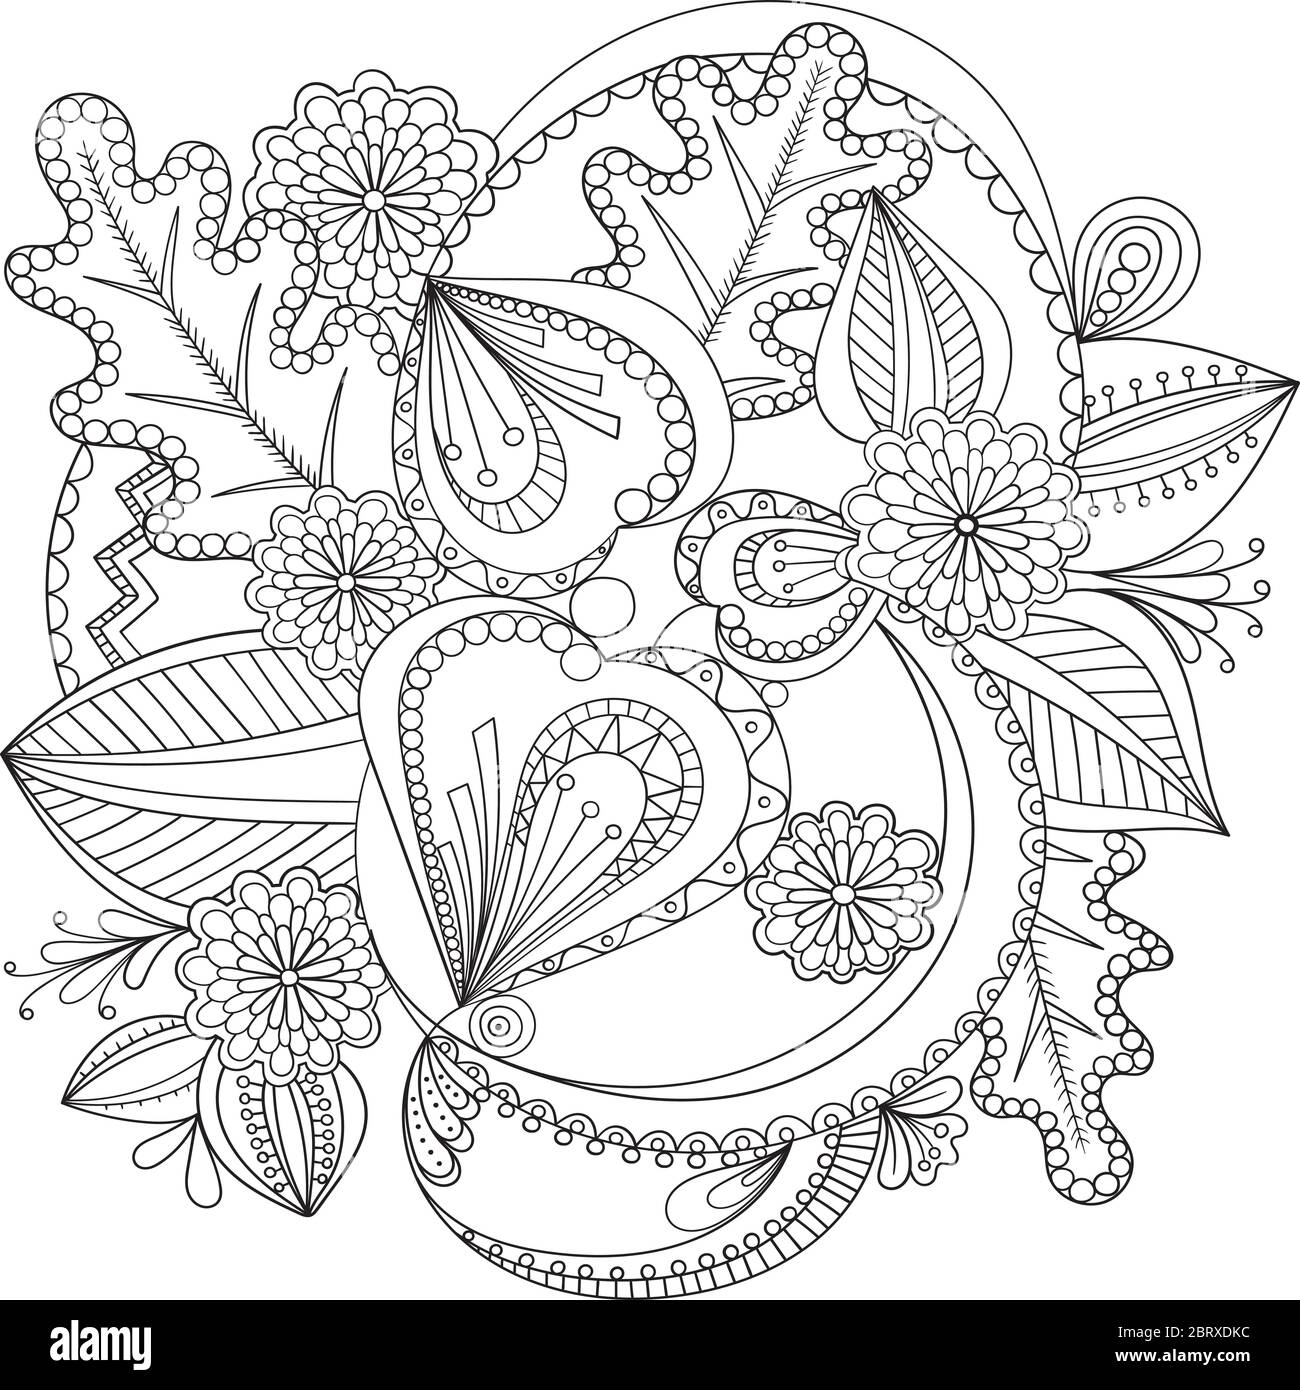 Fleurs décoratives en noir et blanc pour colorier le livre, la couverture ou l'arrière-plan. Dessin dessiné à la main pour adultes anti stress coloriage page. Vecteur Illustration de Vecteur